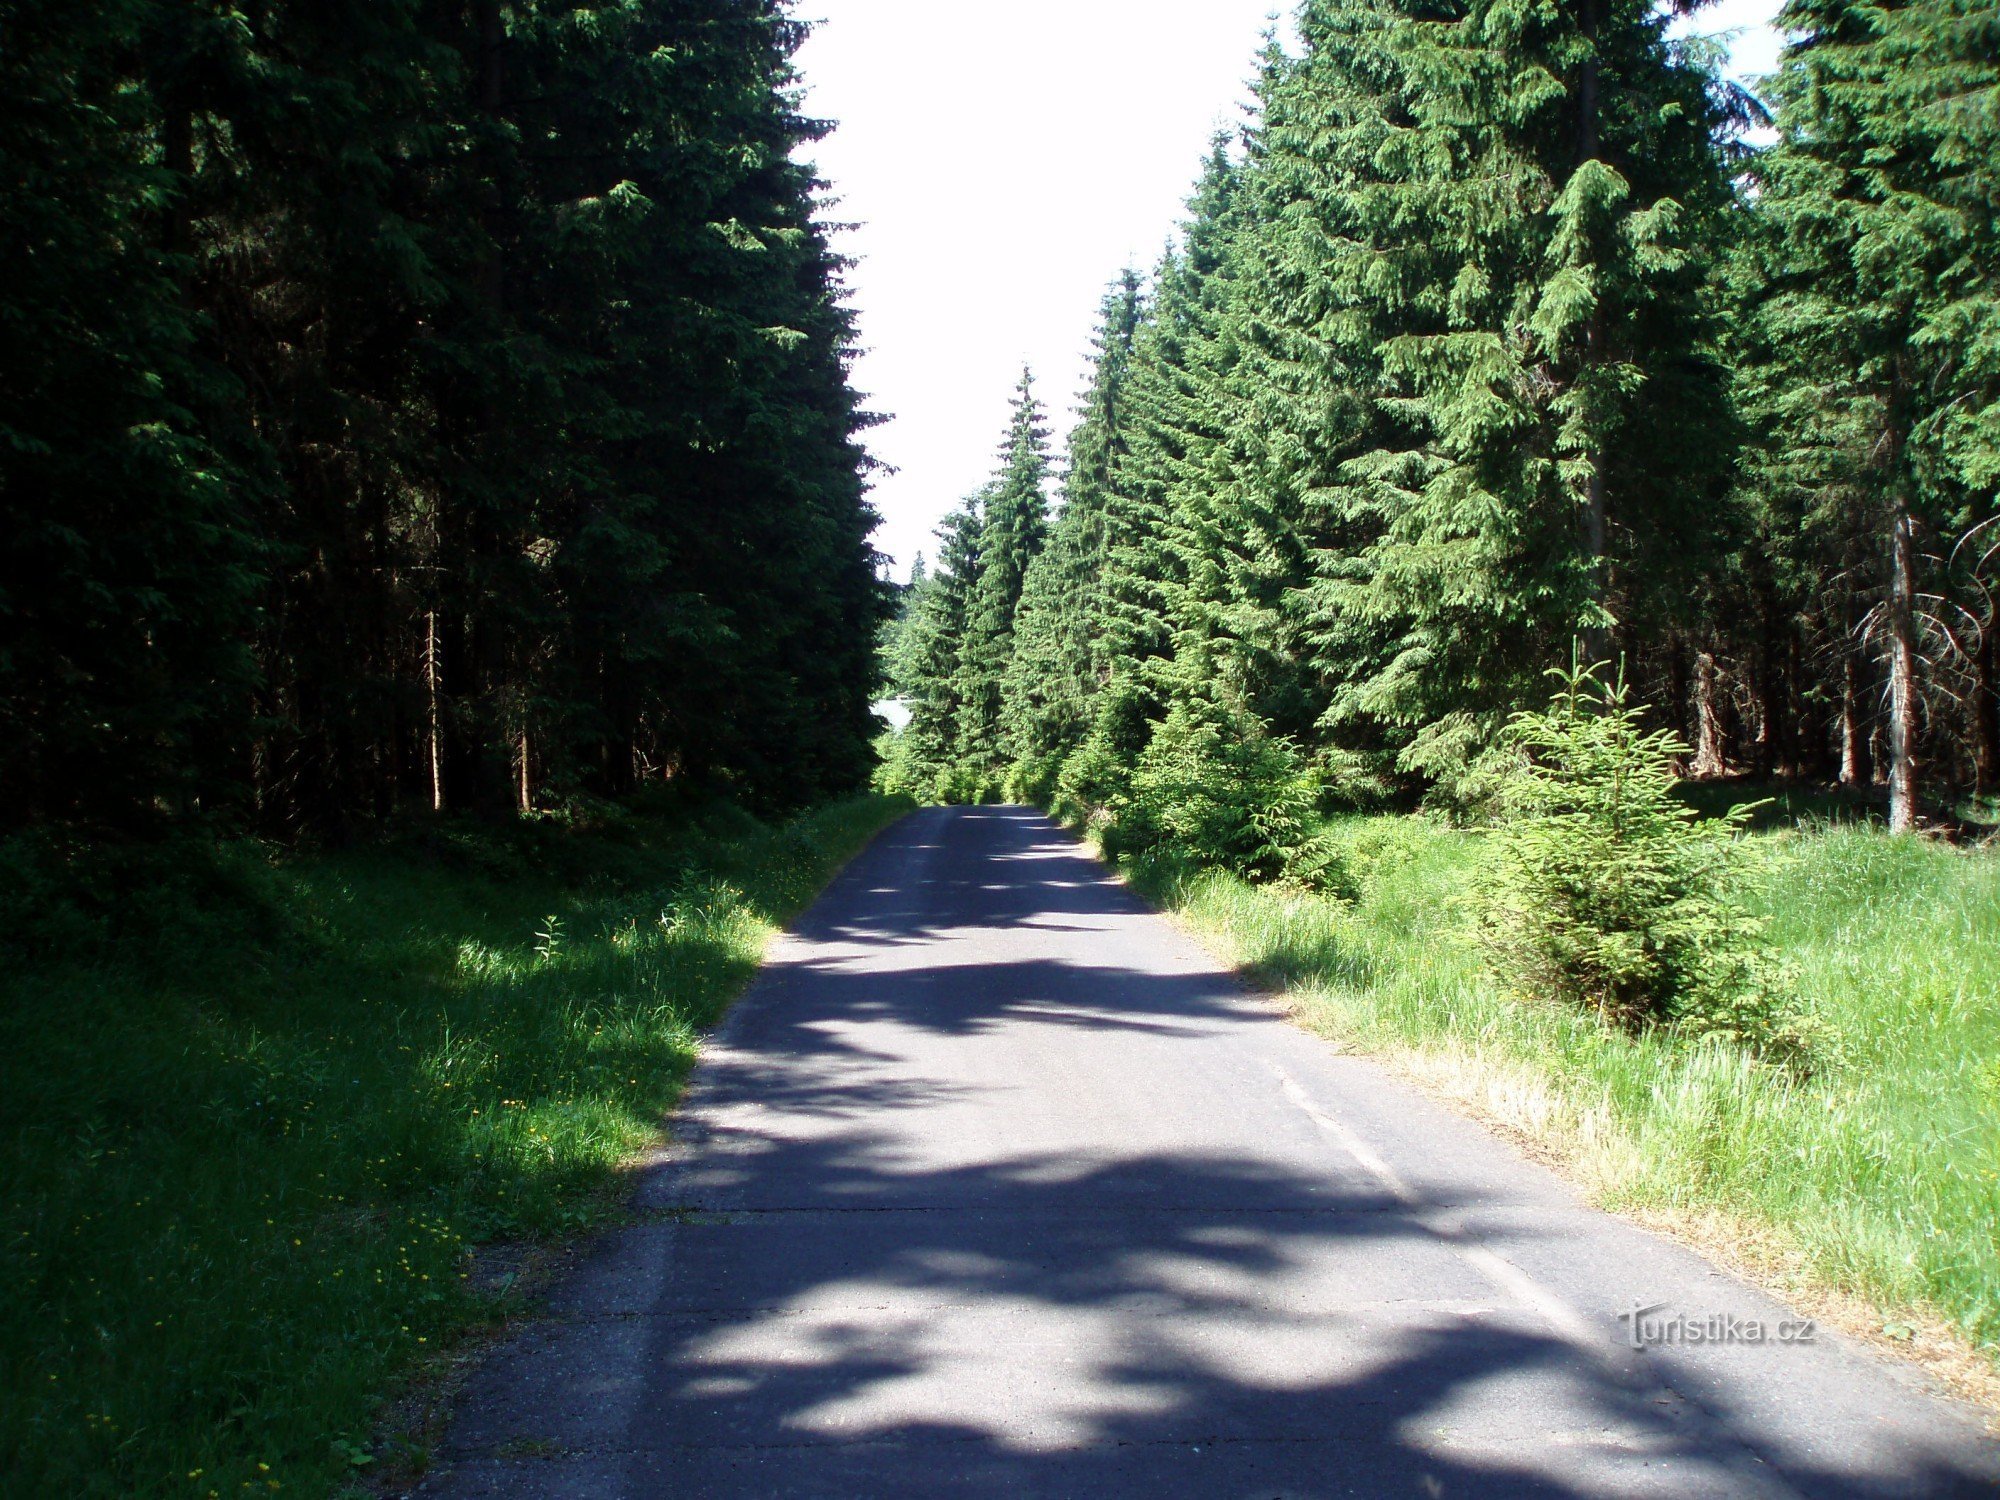 The road from Mariánské Buda